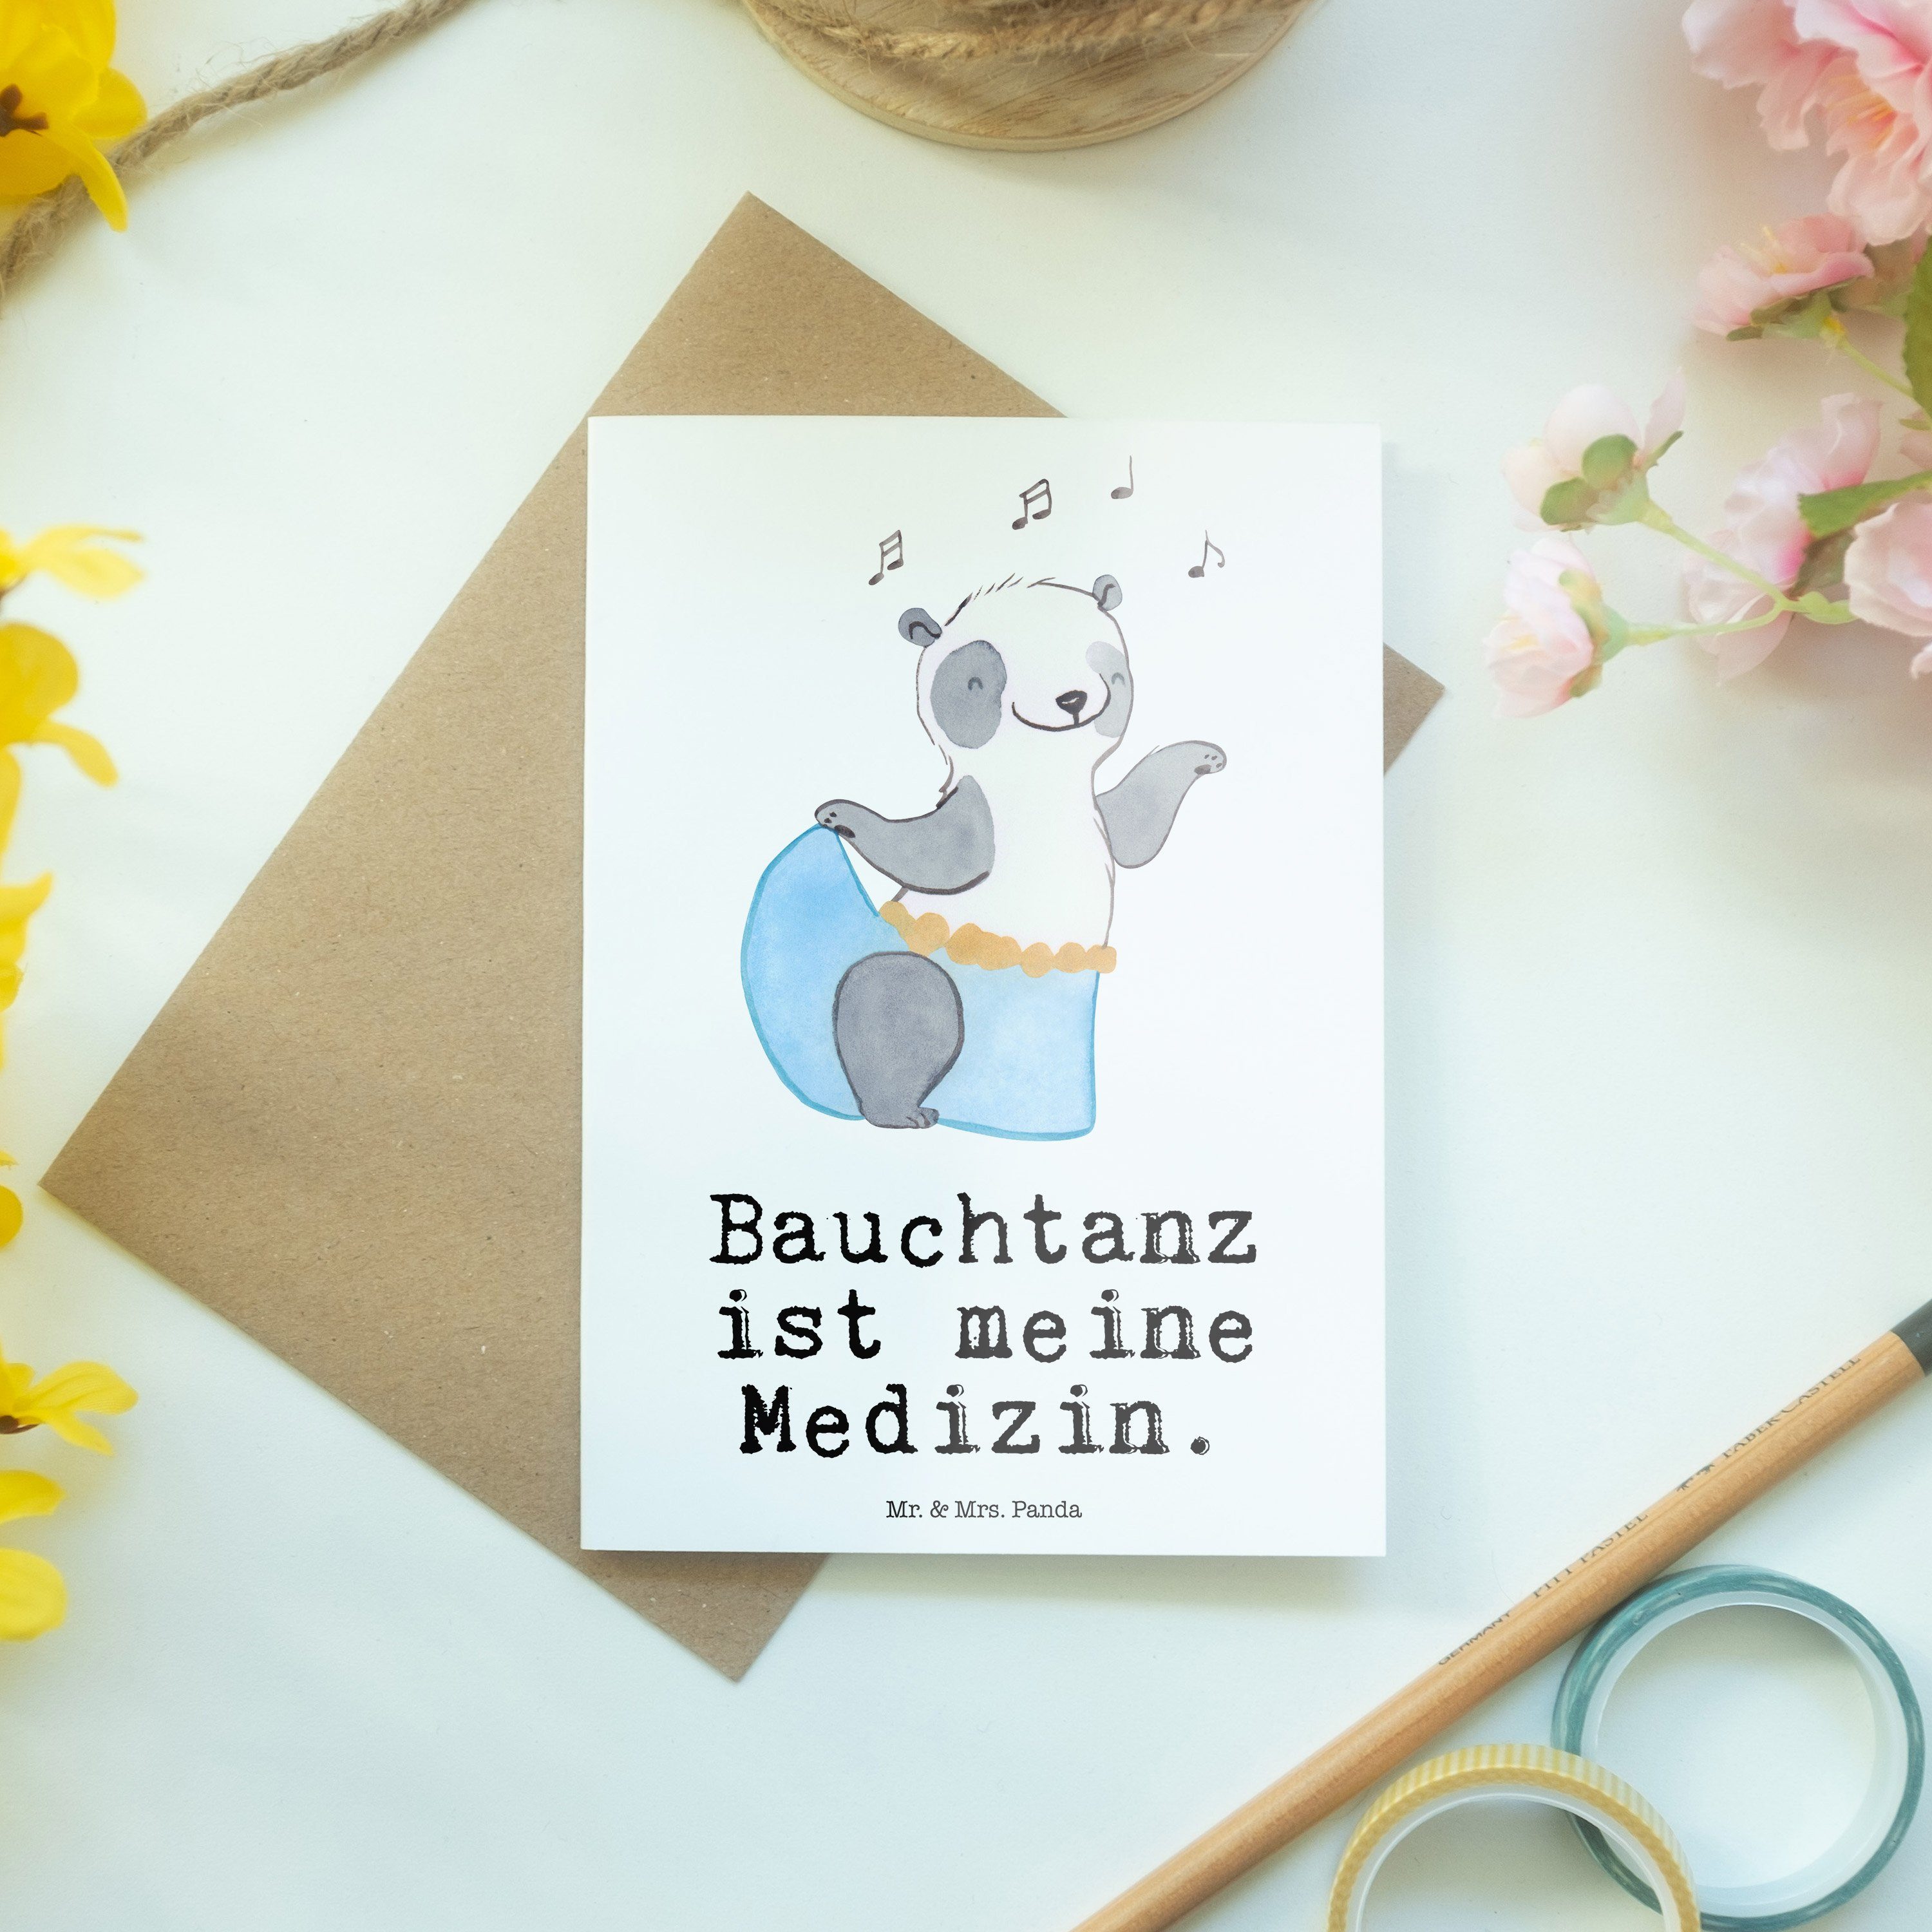 Mr. & Mrs. Panda Weiß Panda Grußkarte - - Hochzeitskarte, Medizin Bauchtanz Geschenk, Einladungs